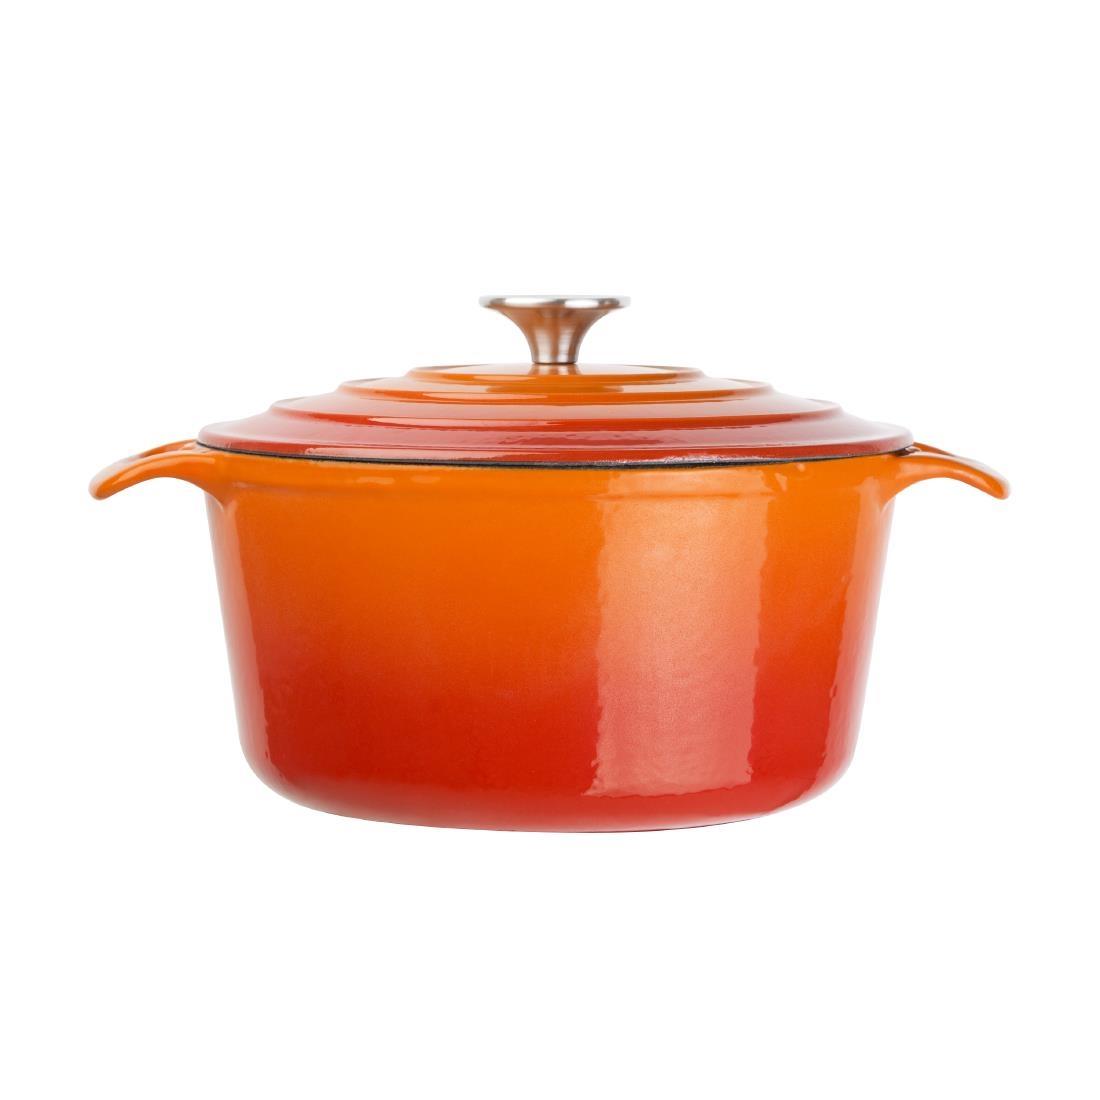 Vogue Orange Round Casserole Dish 3.2Ltr - GH302  - 2